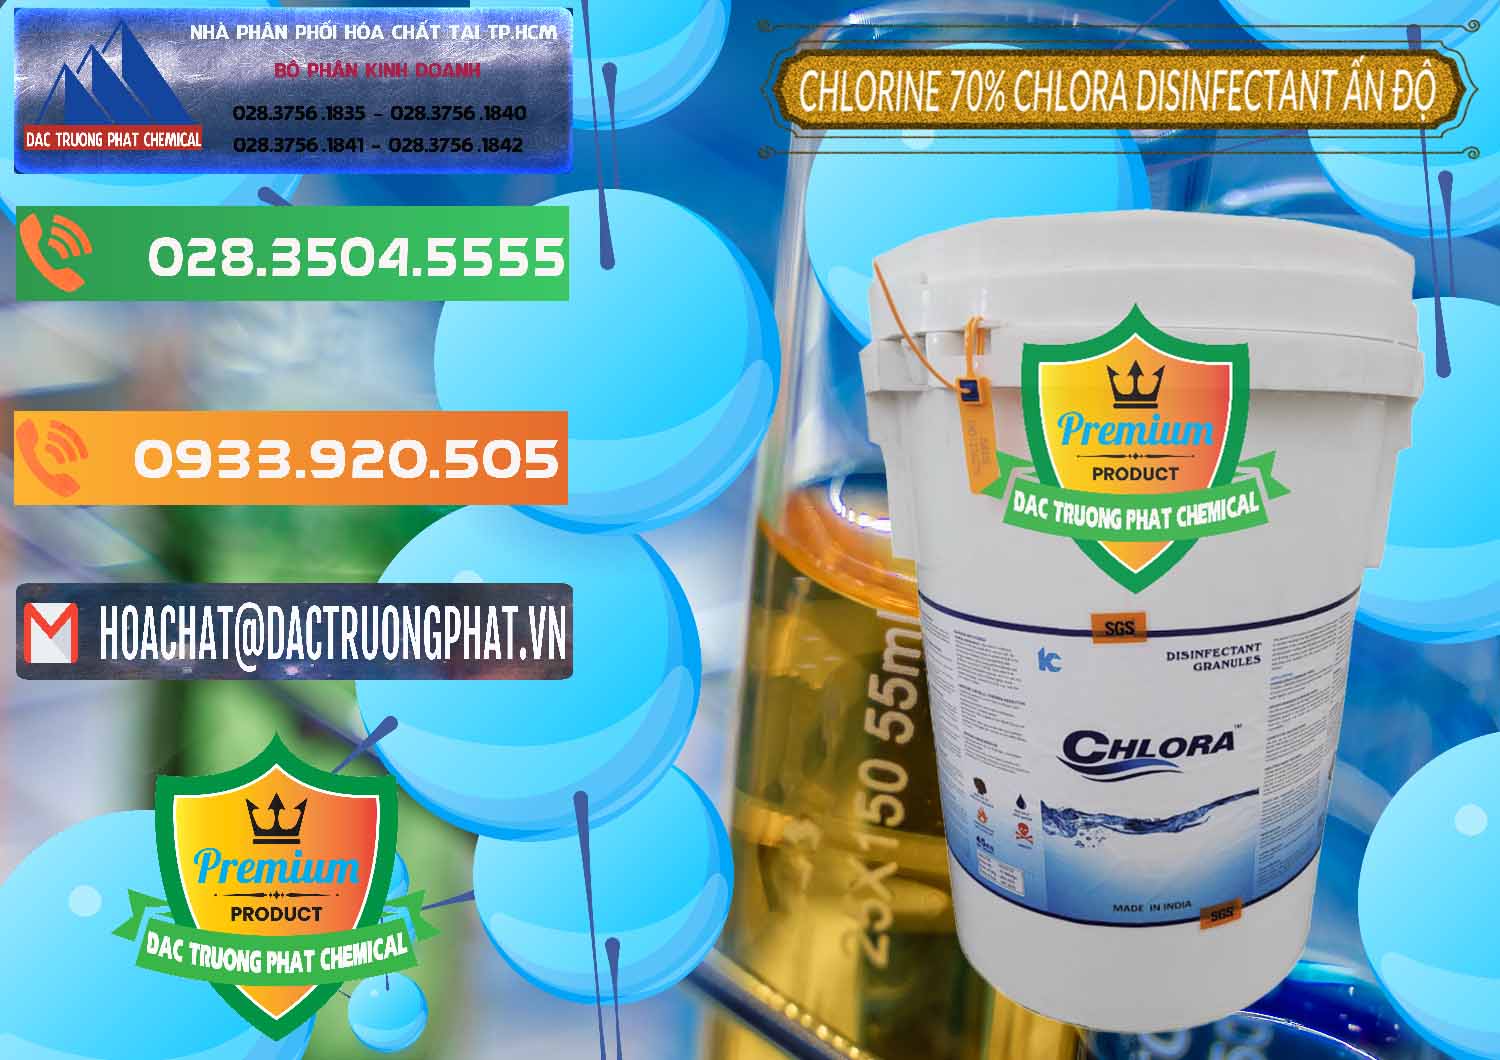 Bán & cung cấp Chlorine – Clorin 70% Chlora Disinfectant Ấn Độ India - 0213 - Nơi cung cấp _ kinh doanh hóa chất tại TP.HCM - hoachatxulynuoc.com.vn